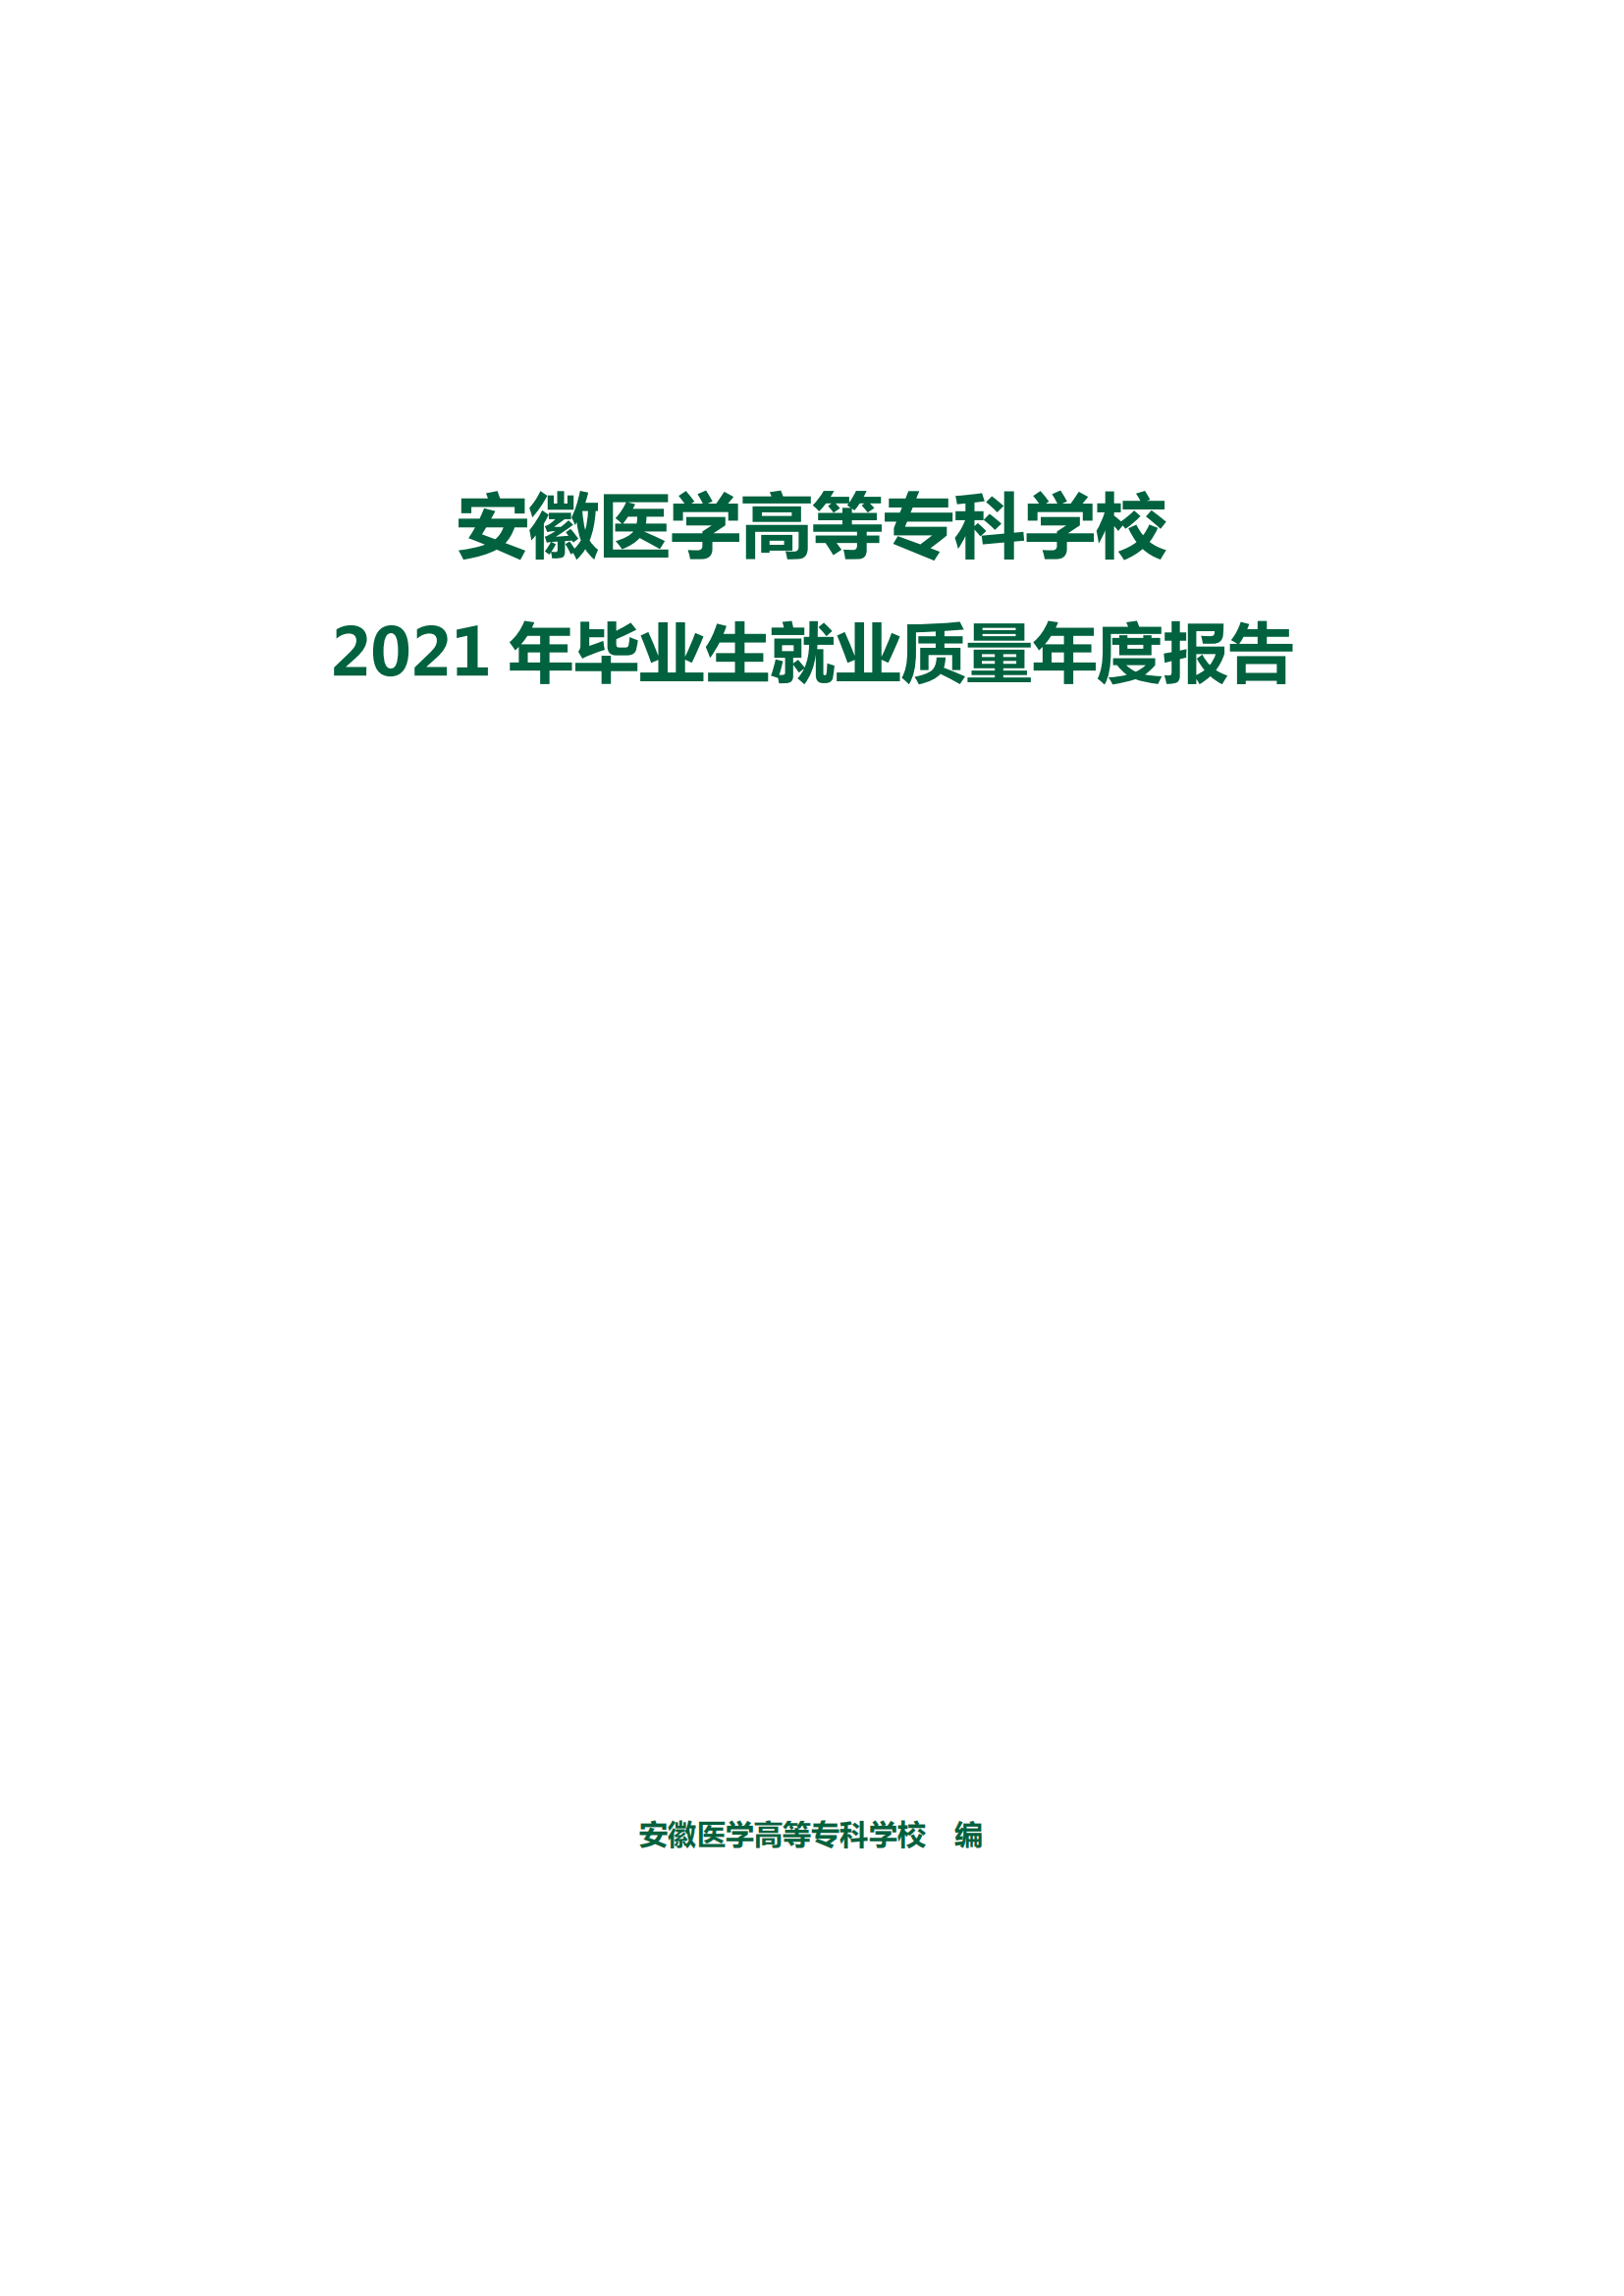 安医专2021年毕业生就业质量报告_01.png